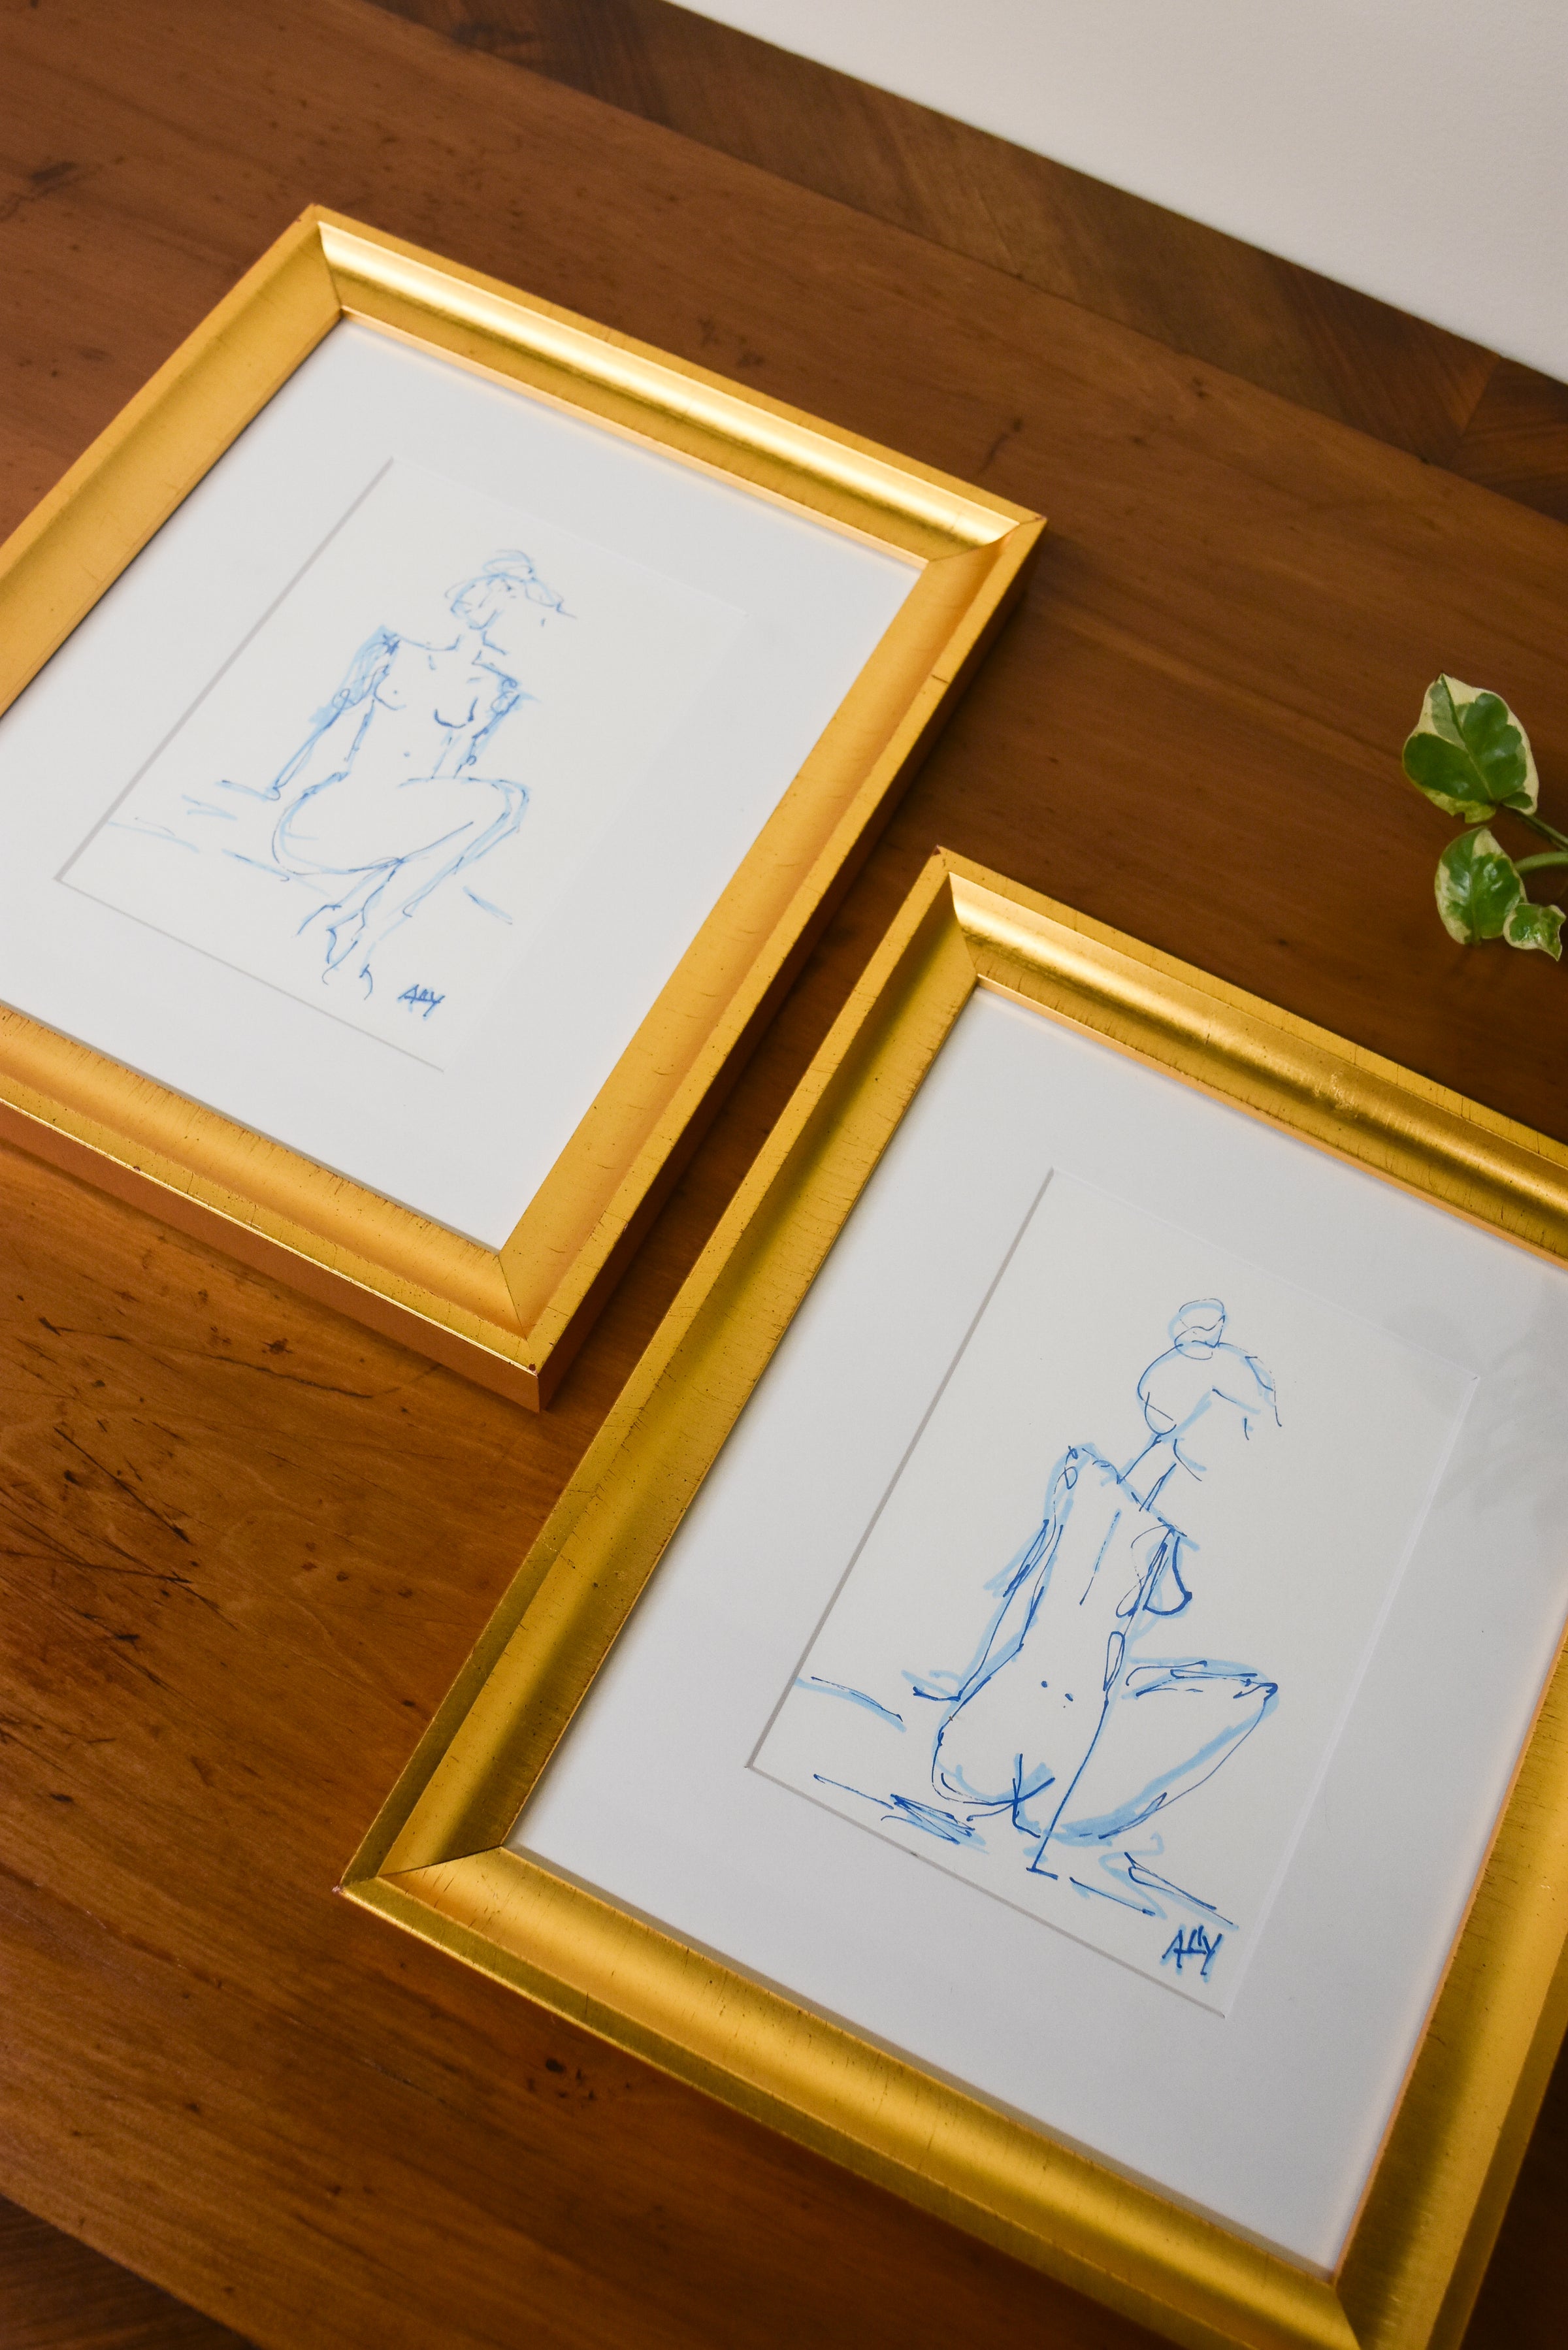 Large Blue Nude Sketch in Modern Gold Frame